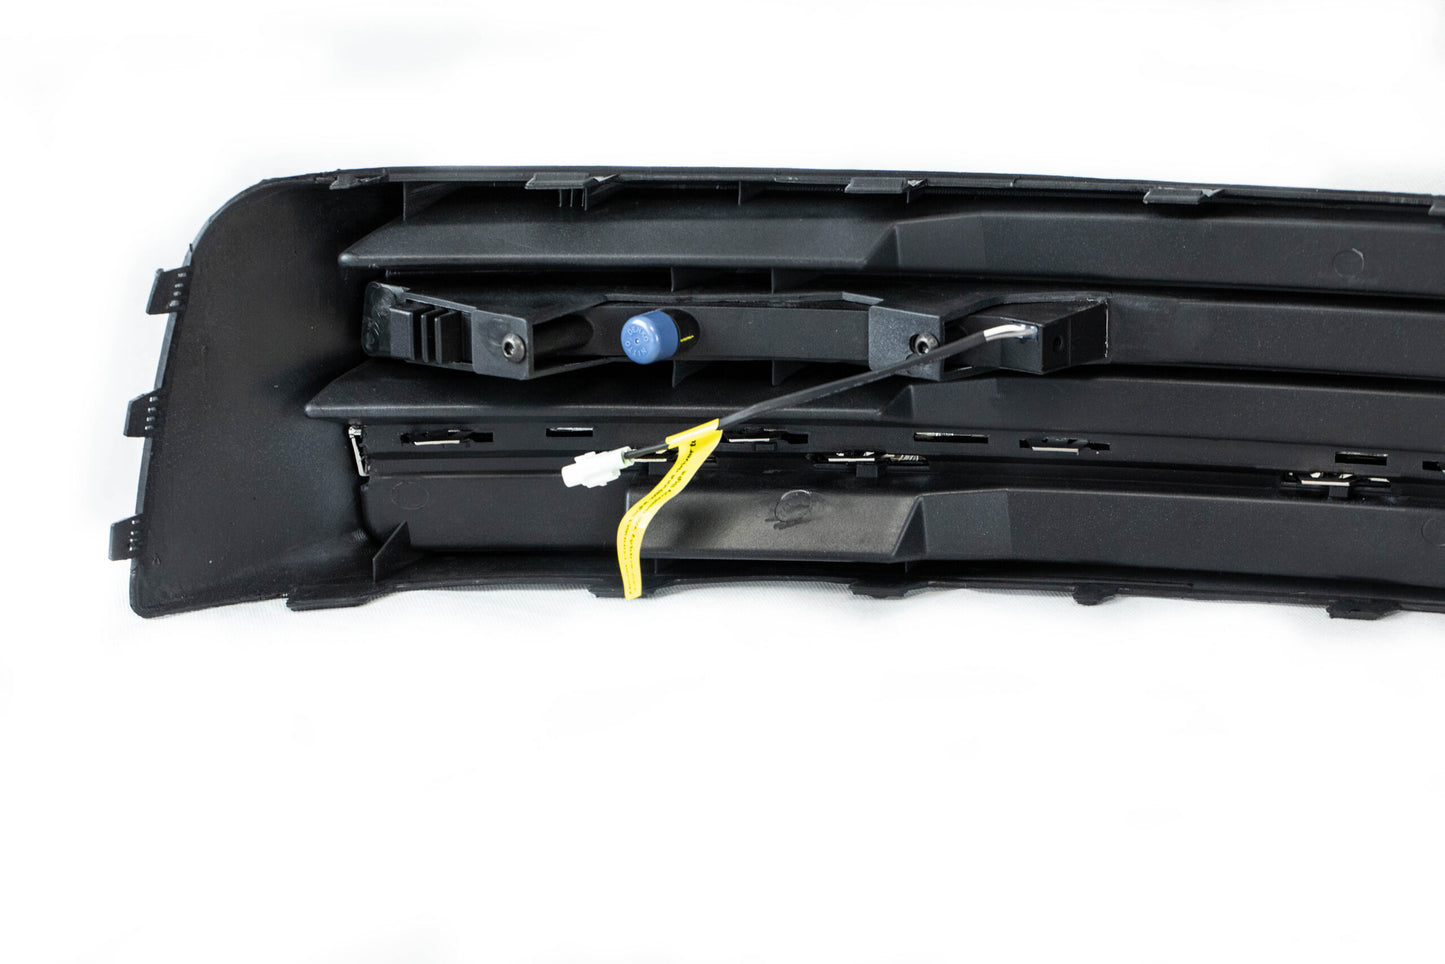 Kit de luces diurnas LED (DRL) con barra de luz para VW T6 Transporter (Negro Brillante) Compatible con parachoques Highline y Sportline, una modificación ideal